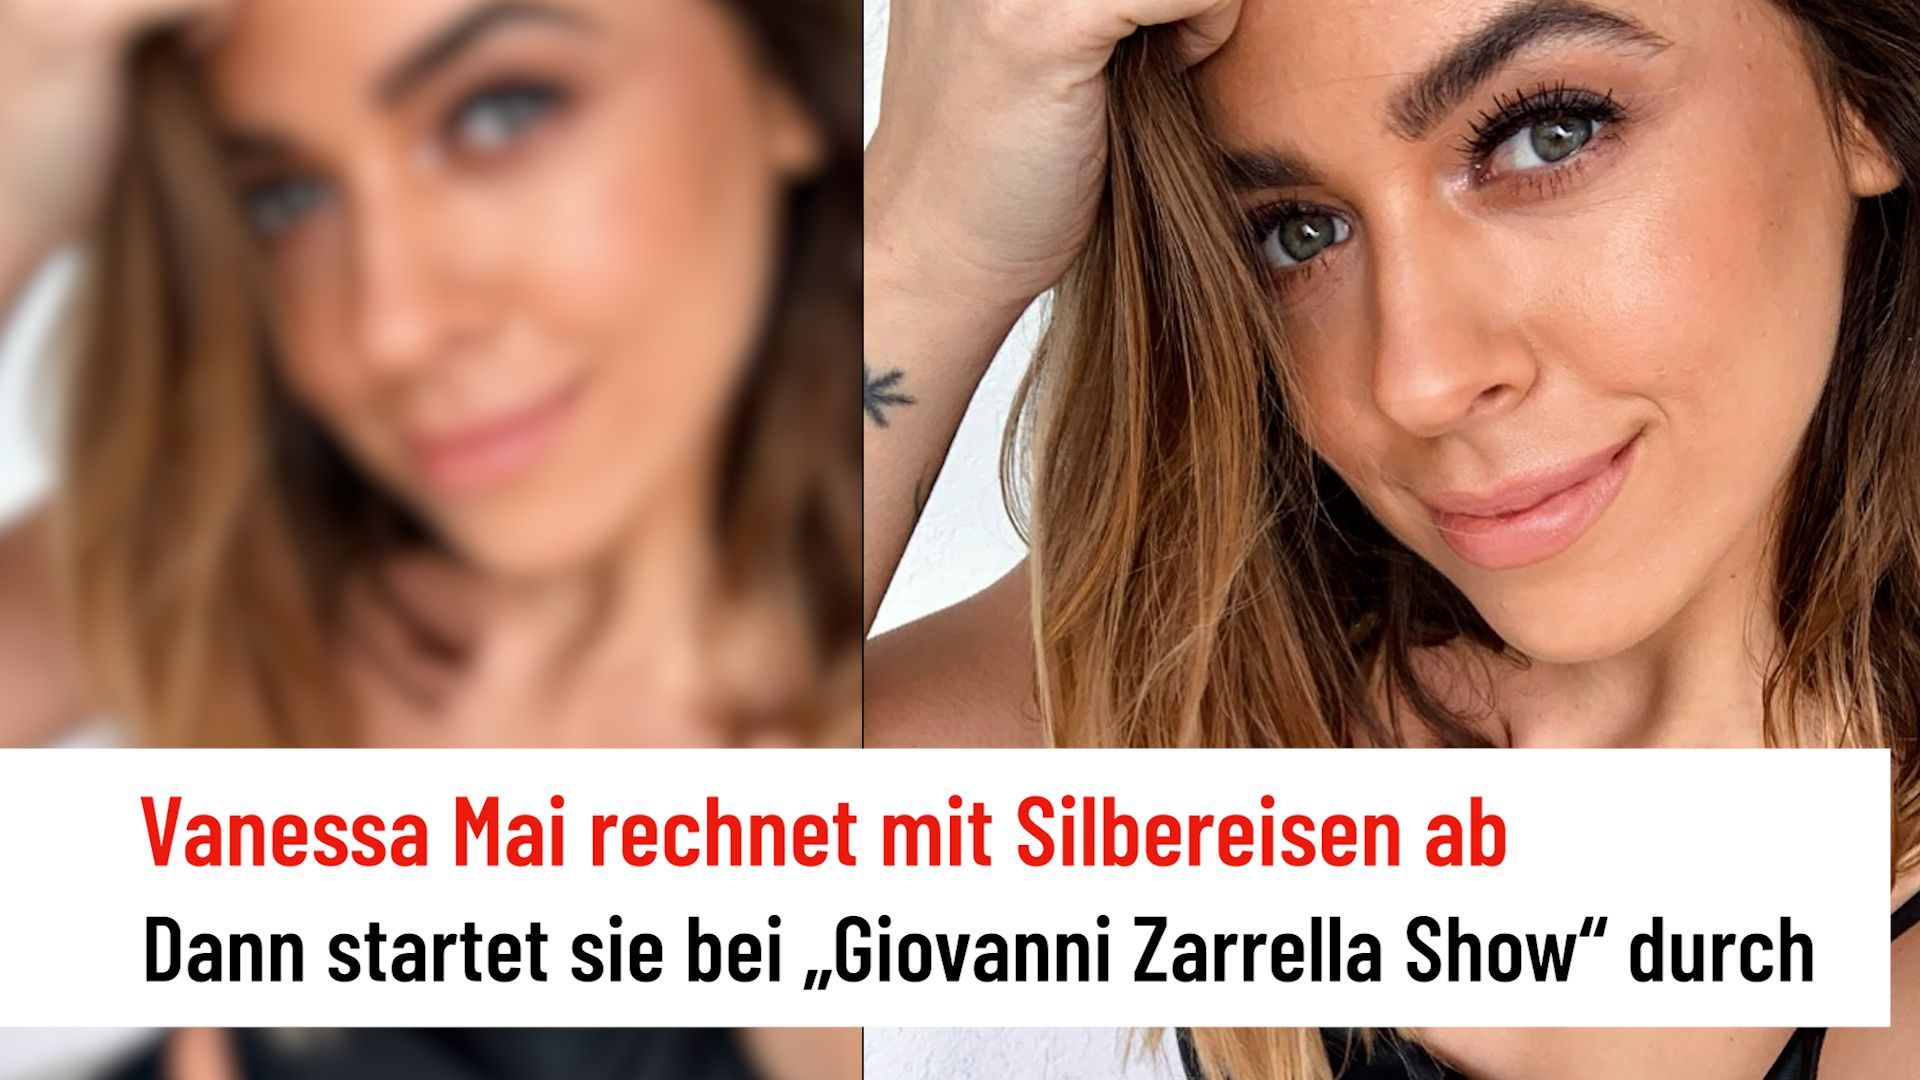 Vanessa Mai: Depois do stress em torno do espectáculo Silbereisen agora com Giovanni Zarrella